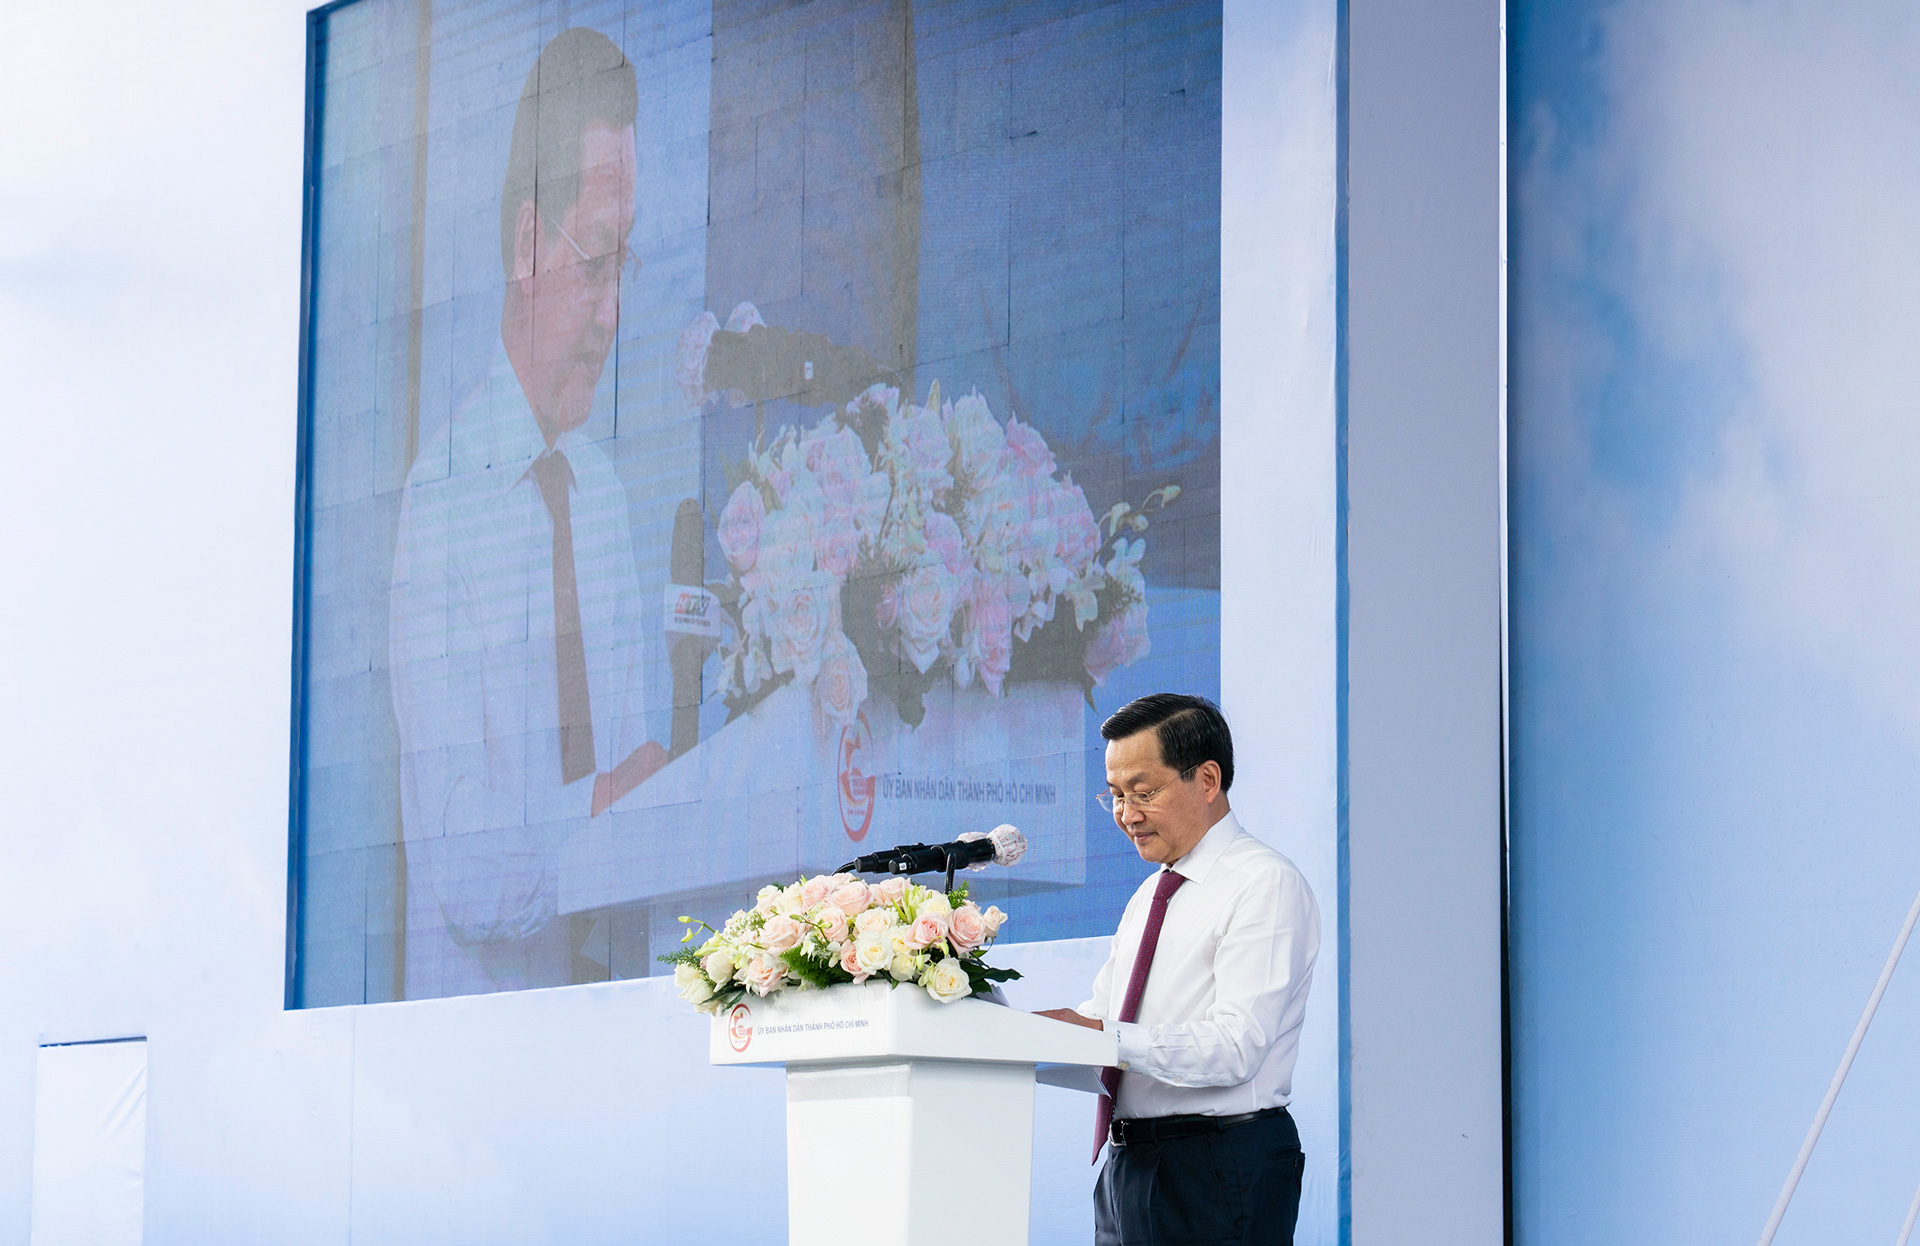 Phó Thủ tướng Chính phủ Lê Minh Khái khẳng định: “Cầu Thủ Thiêm 2 là công trình đặc biệt quan trọng, sau khi hoàn thành sẽ từng bước hình thành mạng lưới giao thông hoàn chỉnh, thúc đẩy phát triển kinh tế - xã hội của TP.HCM.